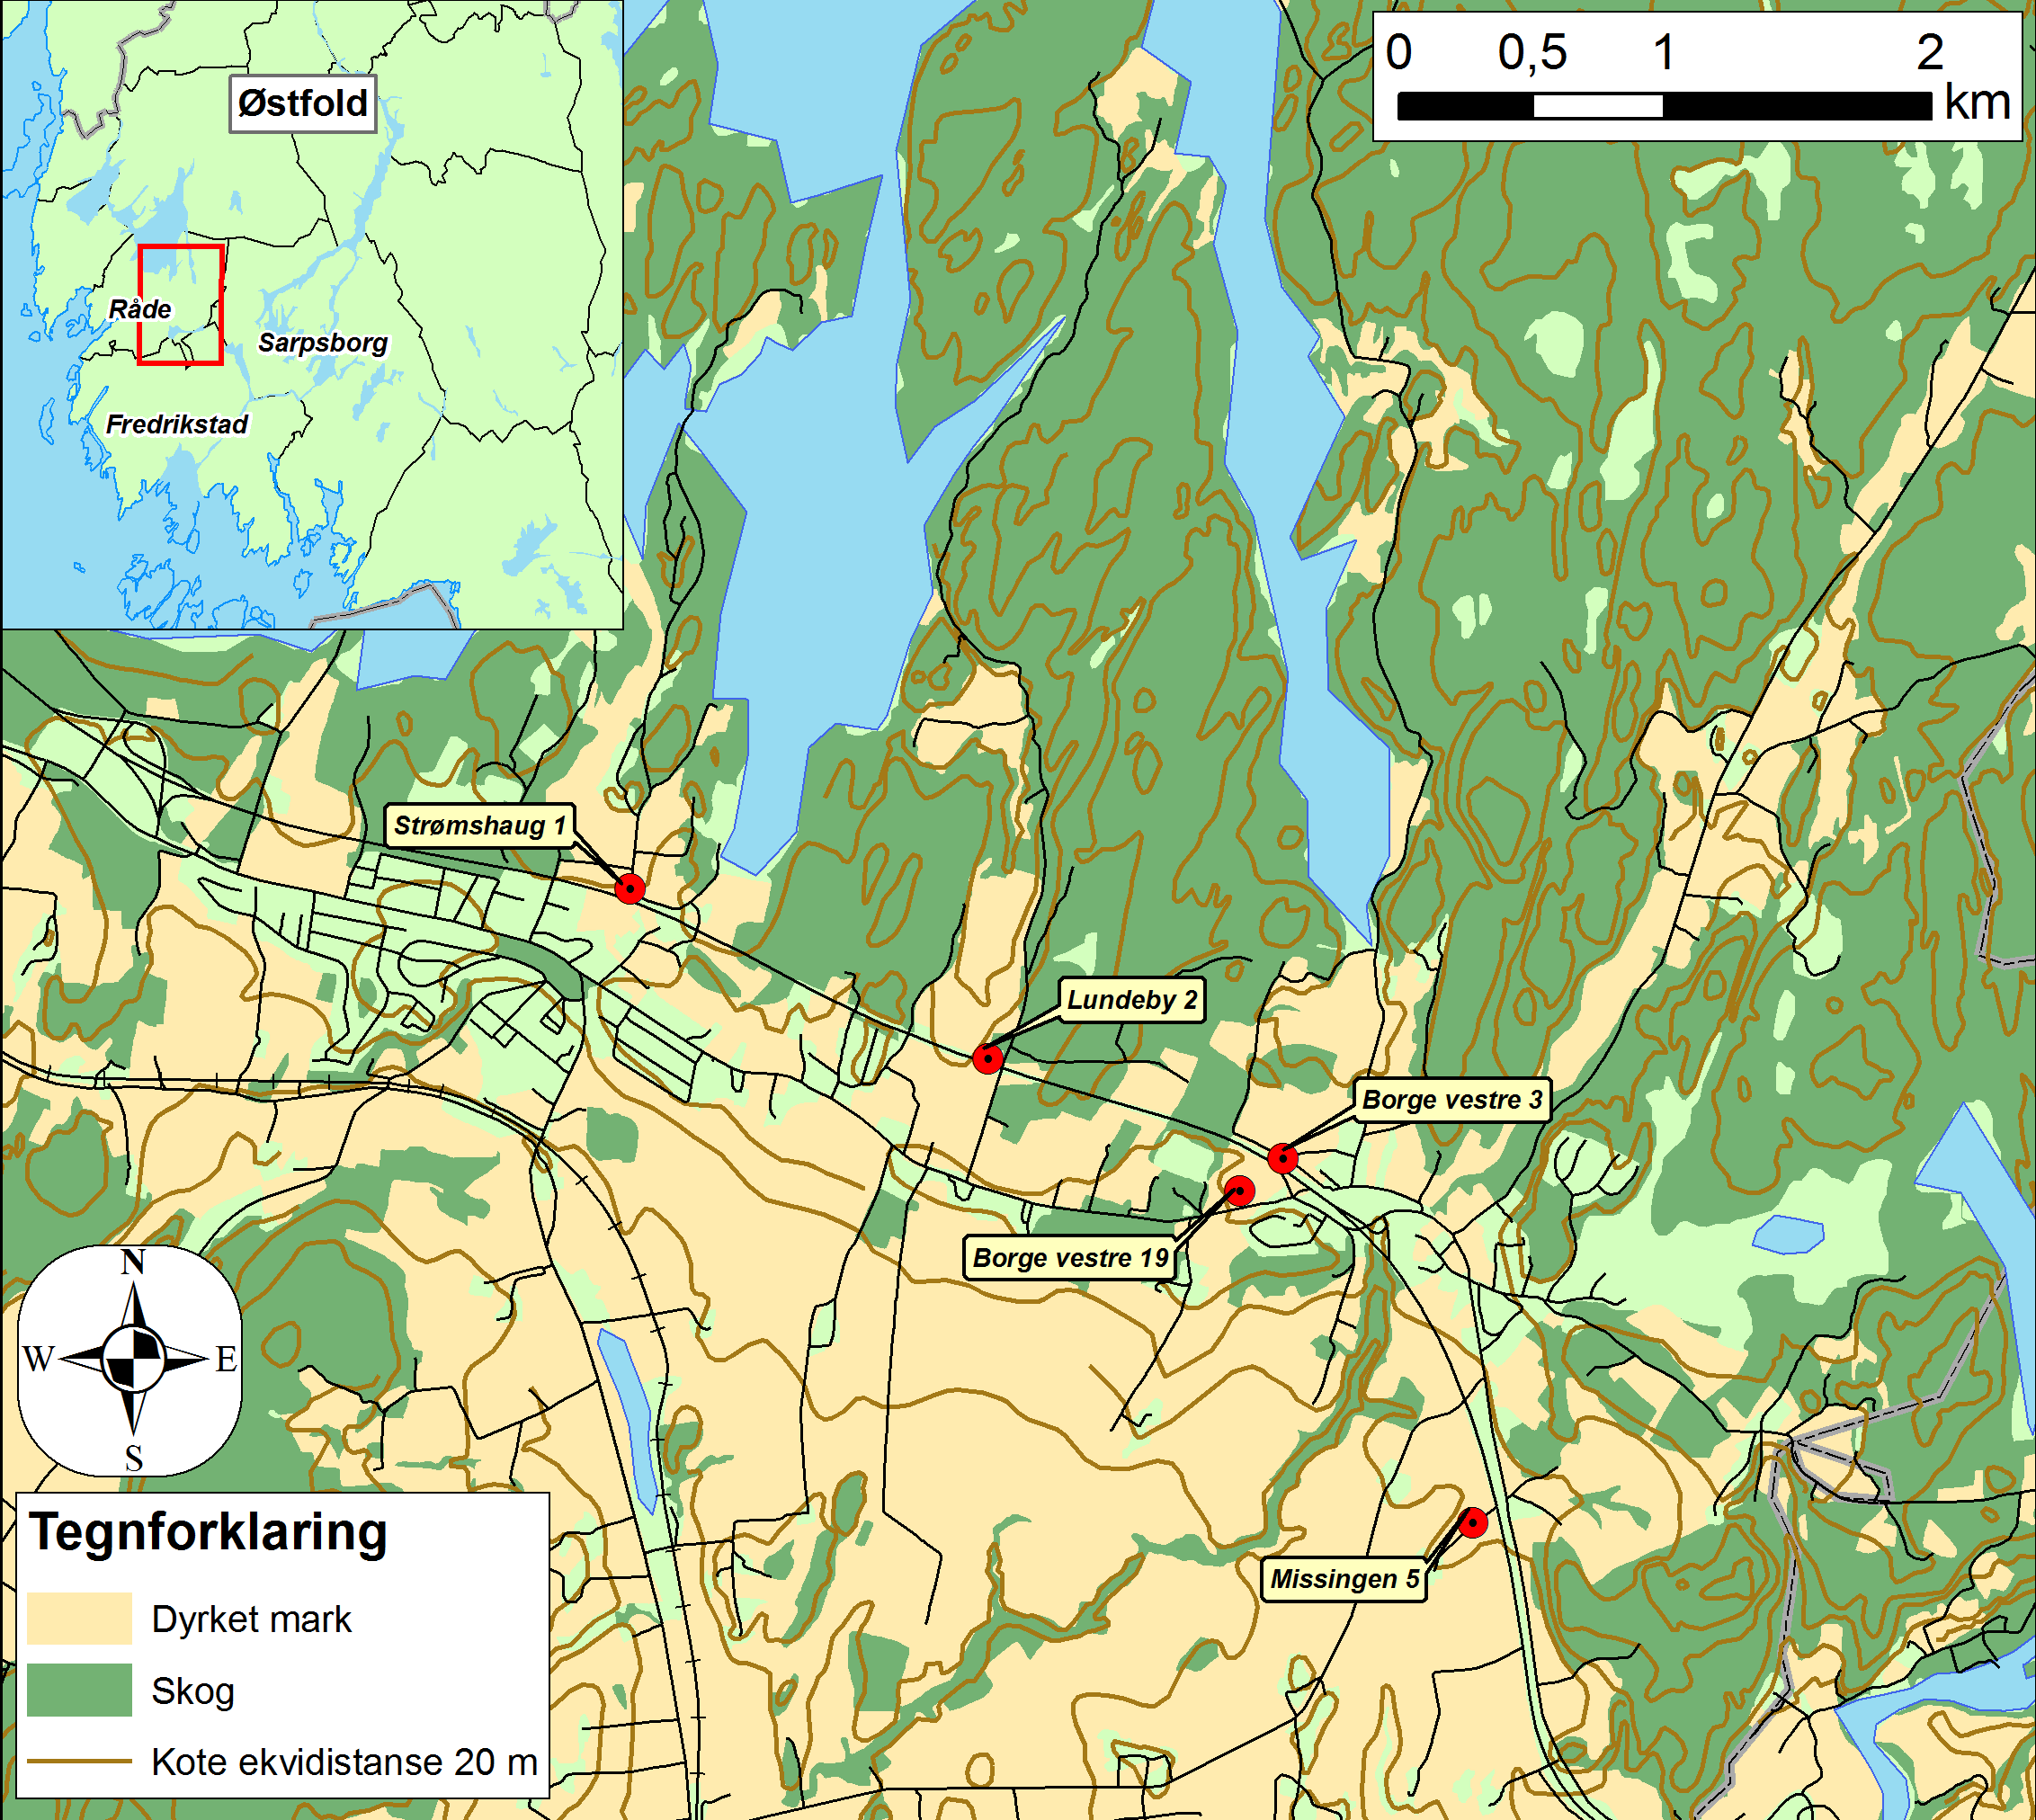 8.3.2 Området i Råde kommune, Østfold. Det andre området ligger i Råde kommune i Østfold. I Varia er dette området omtalt som kulturmiljø Råde (Bårdseth 2007e).